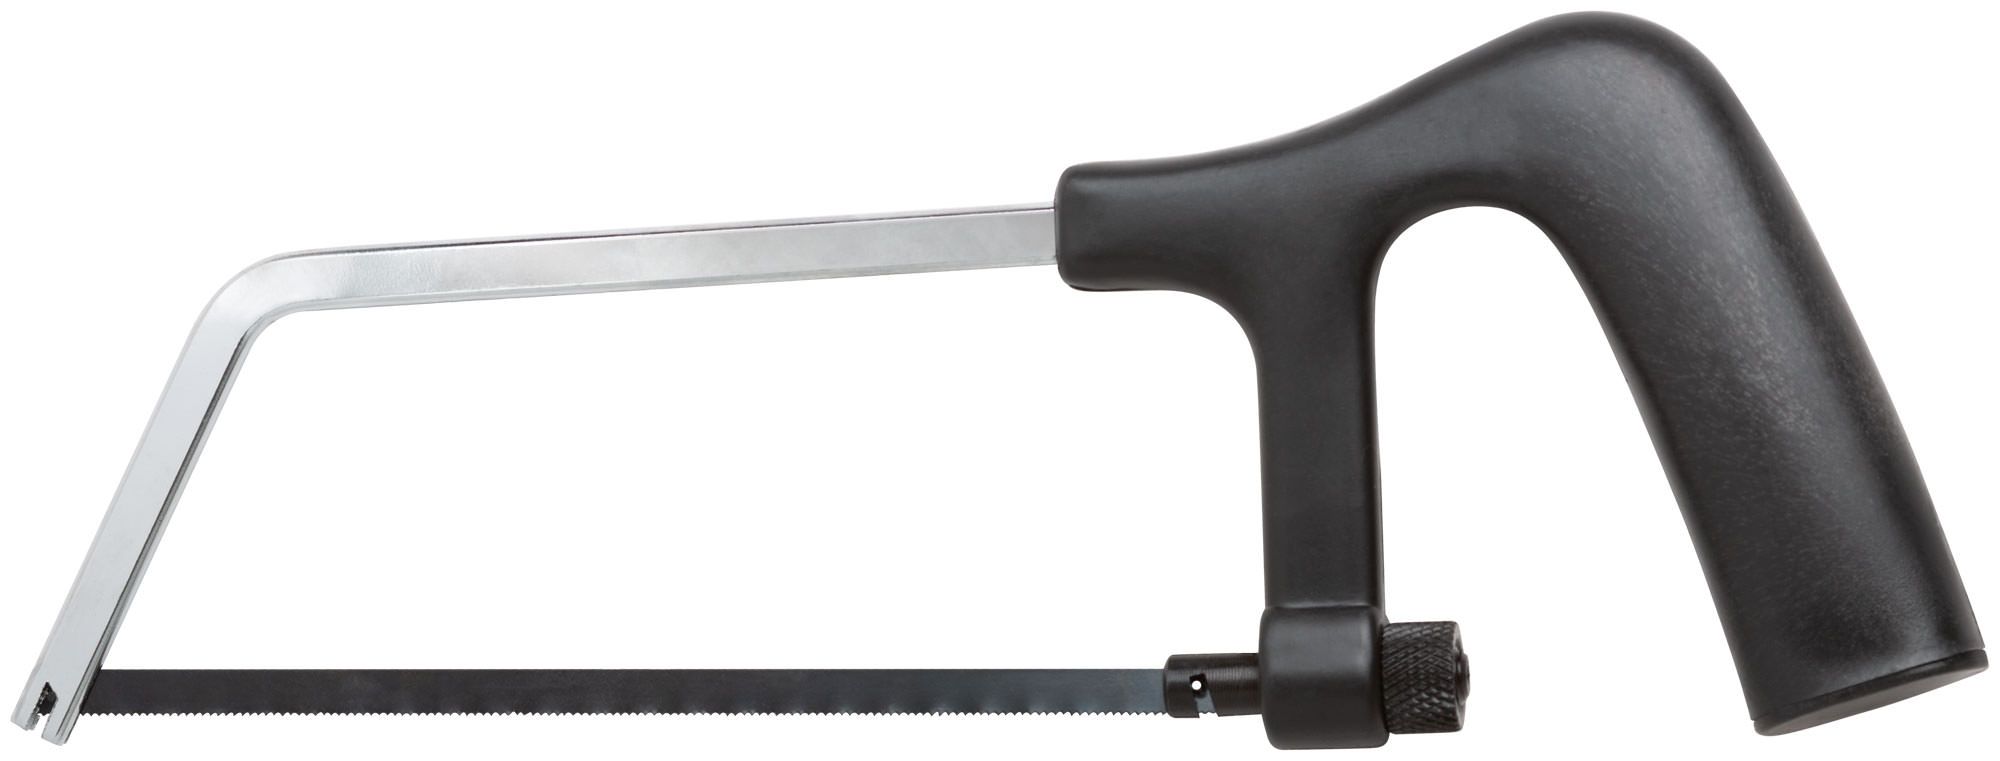 Ножовка по металлу мини 150 мм "Юниор", пластиковая черная ручка FIT 40025